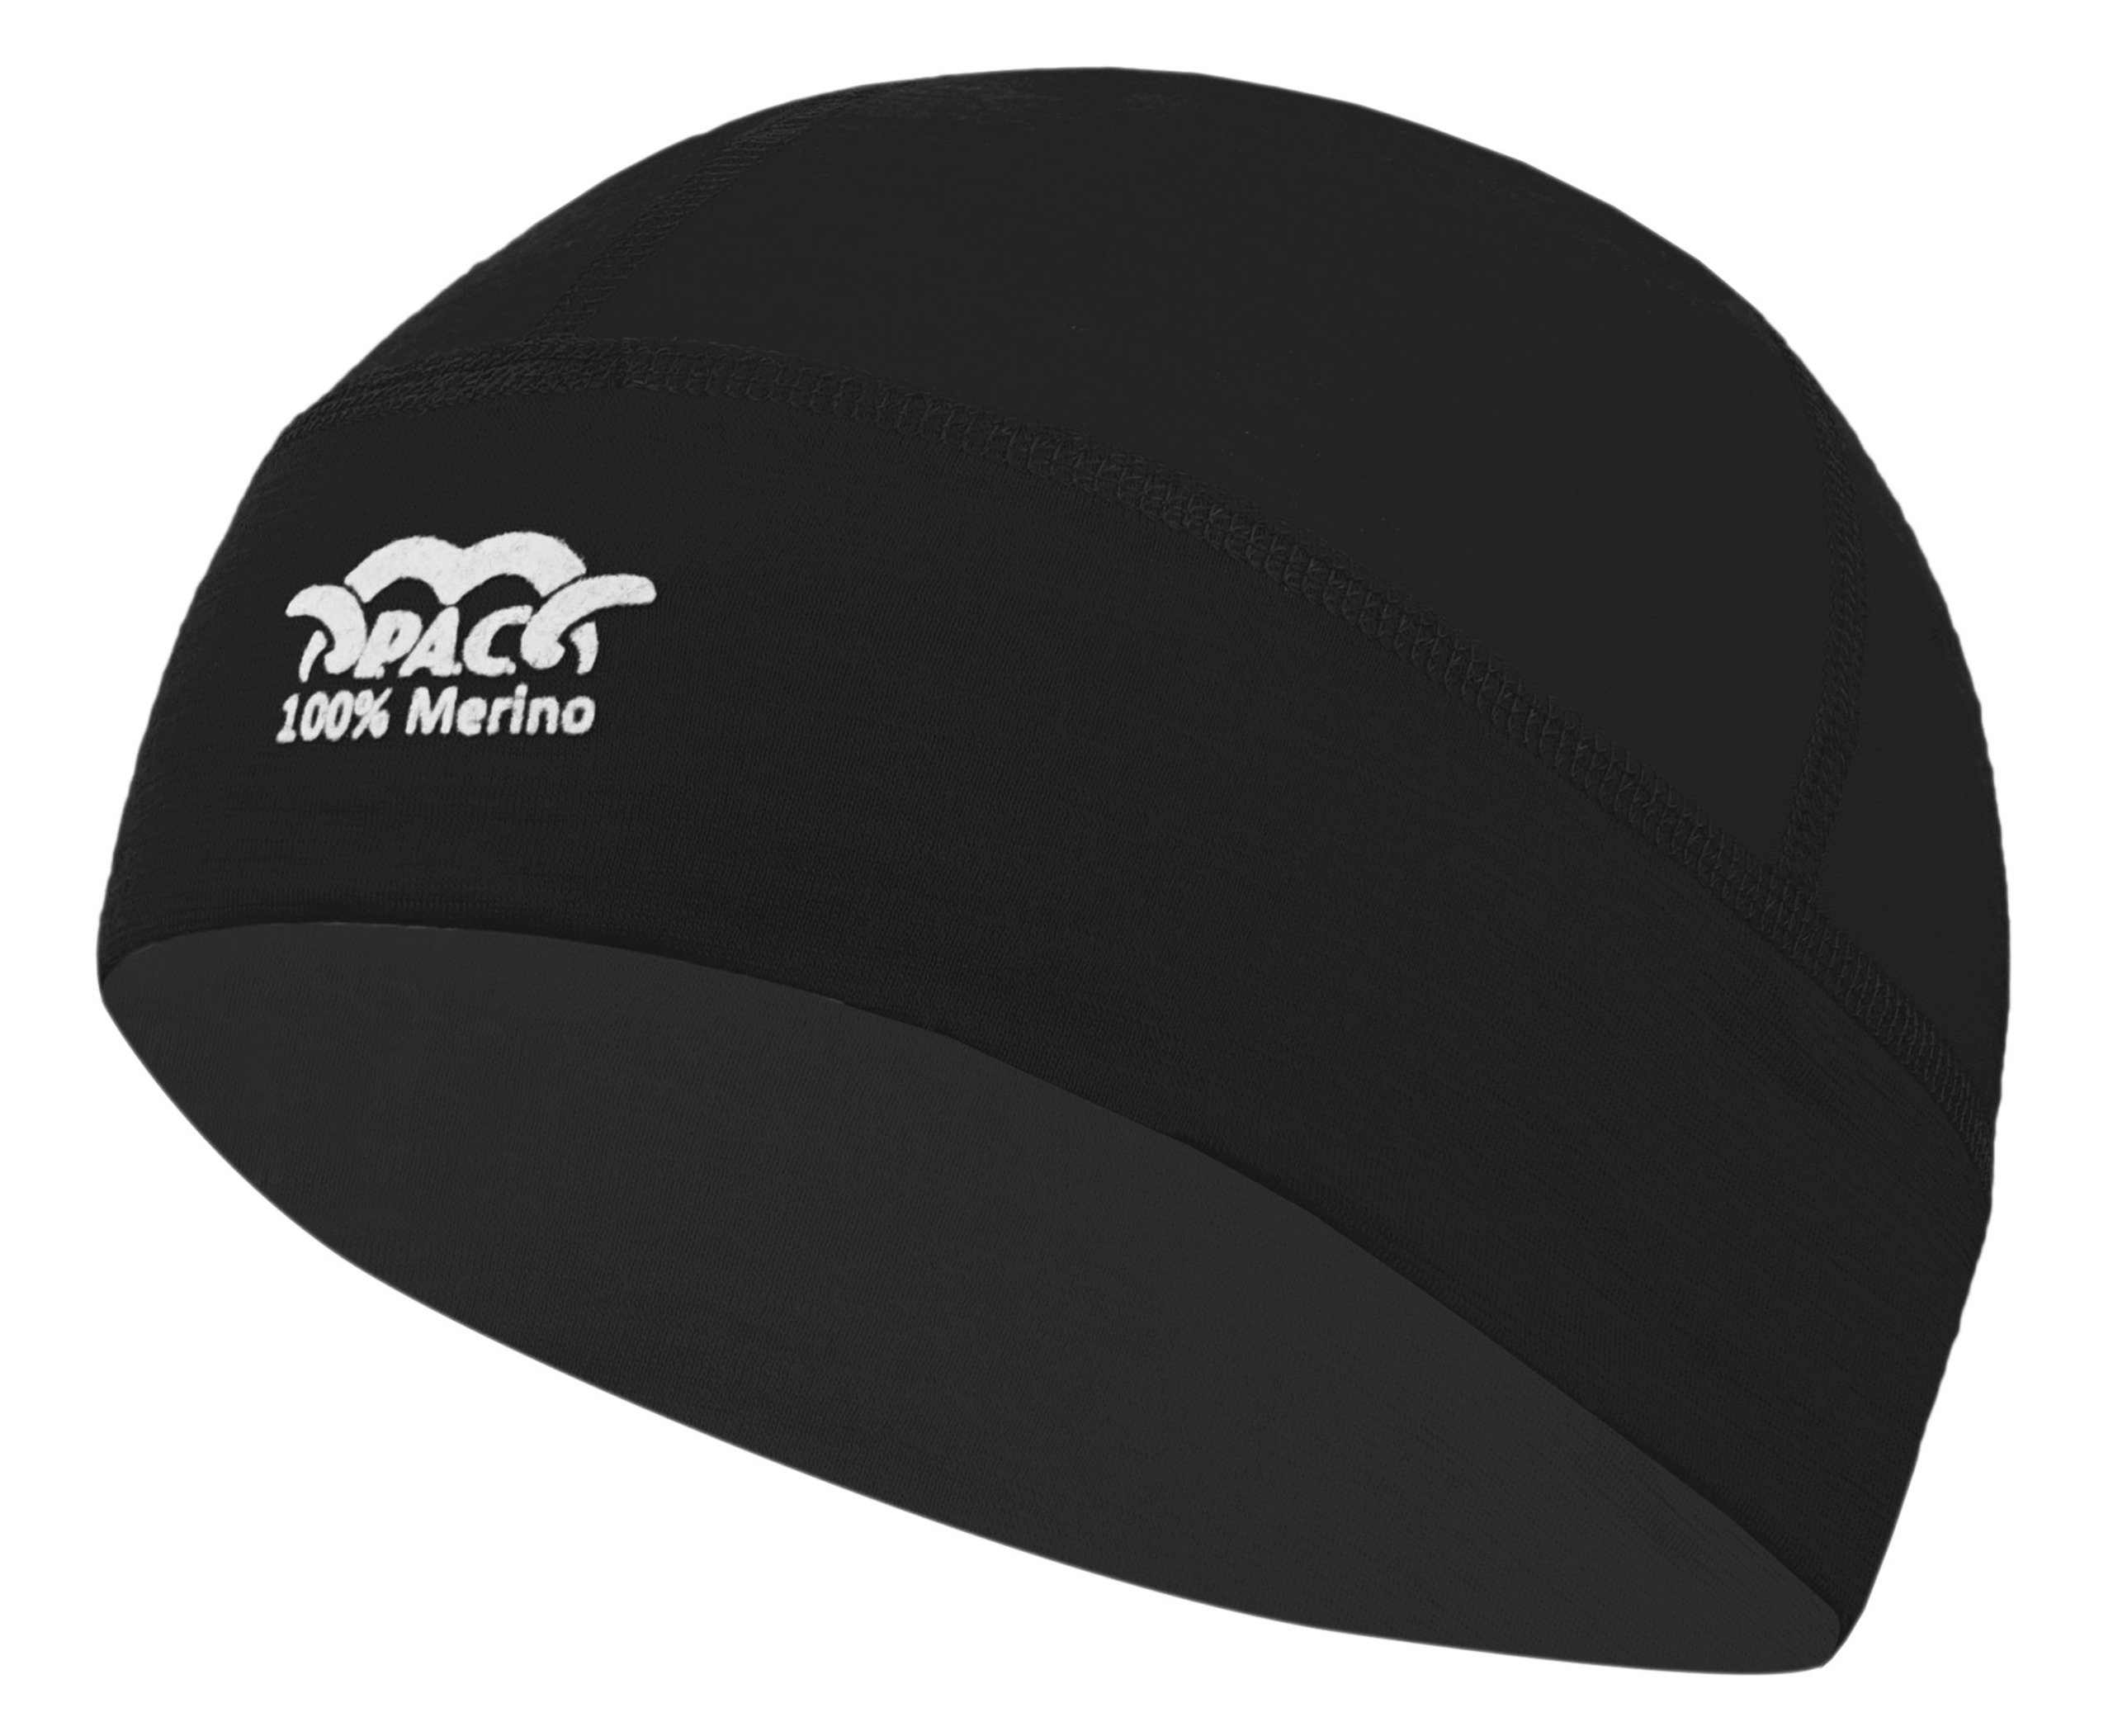 P.A.C. Merino Hat Black Funktionsmütze - atmungsaktive, funktionelle Merinowoll Mütze, Unisex, Thermoregulierung